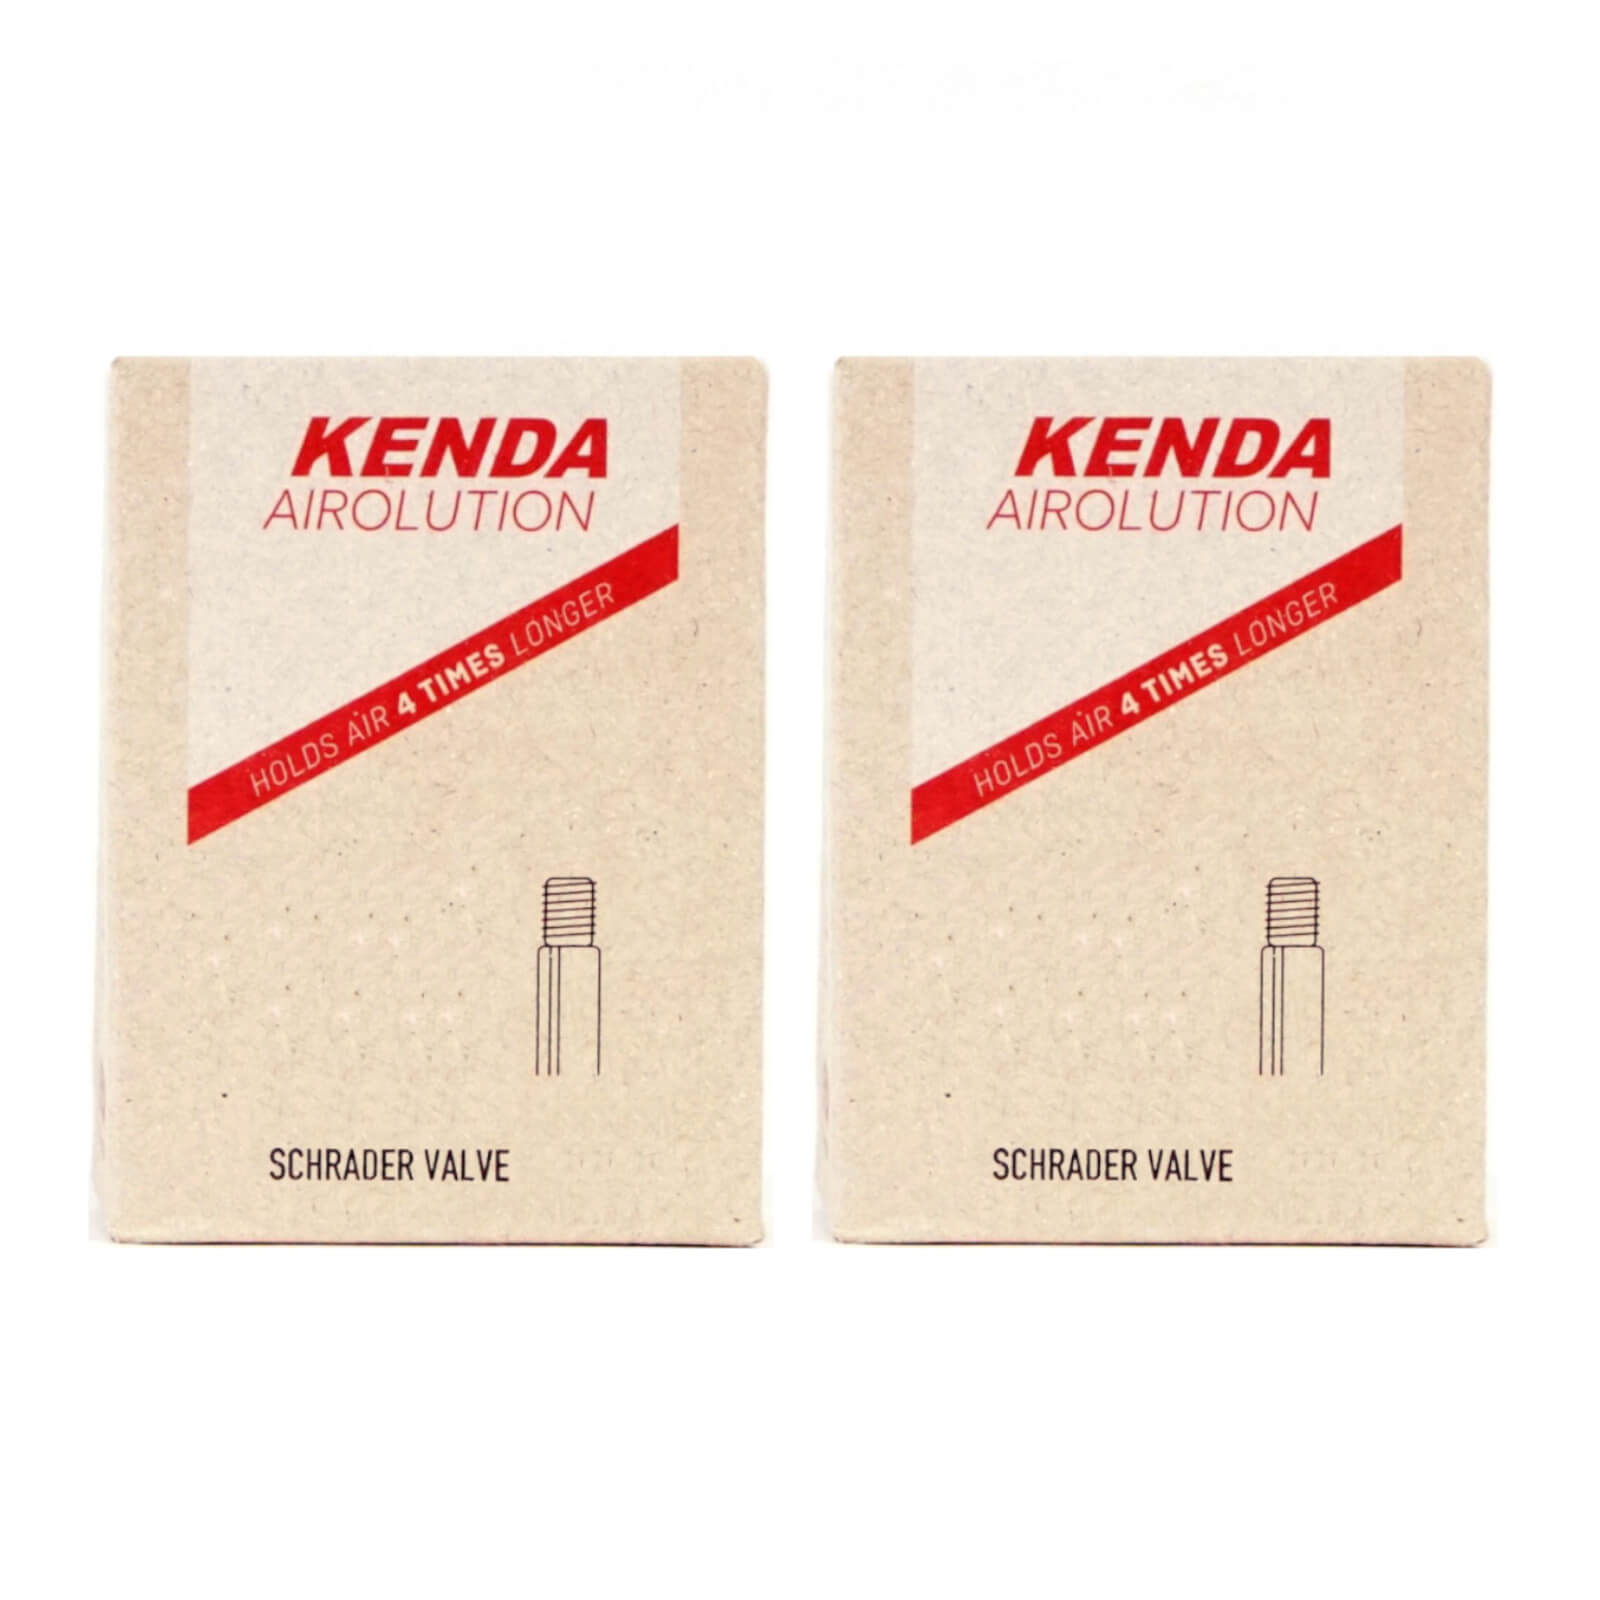 Kenda Airolution 12x1.75-2.25" 12 Inch Schrader Valve Bike Inner Tube Pack of 2